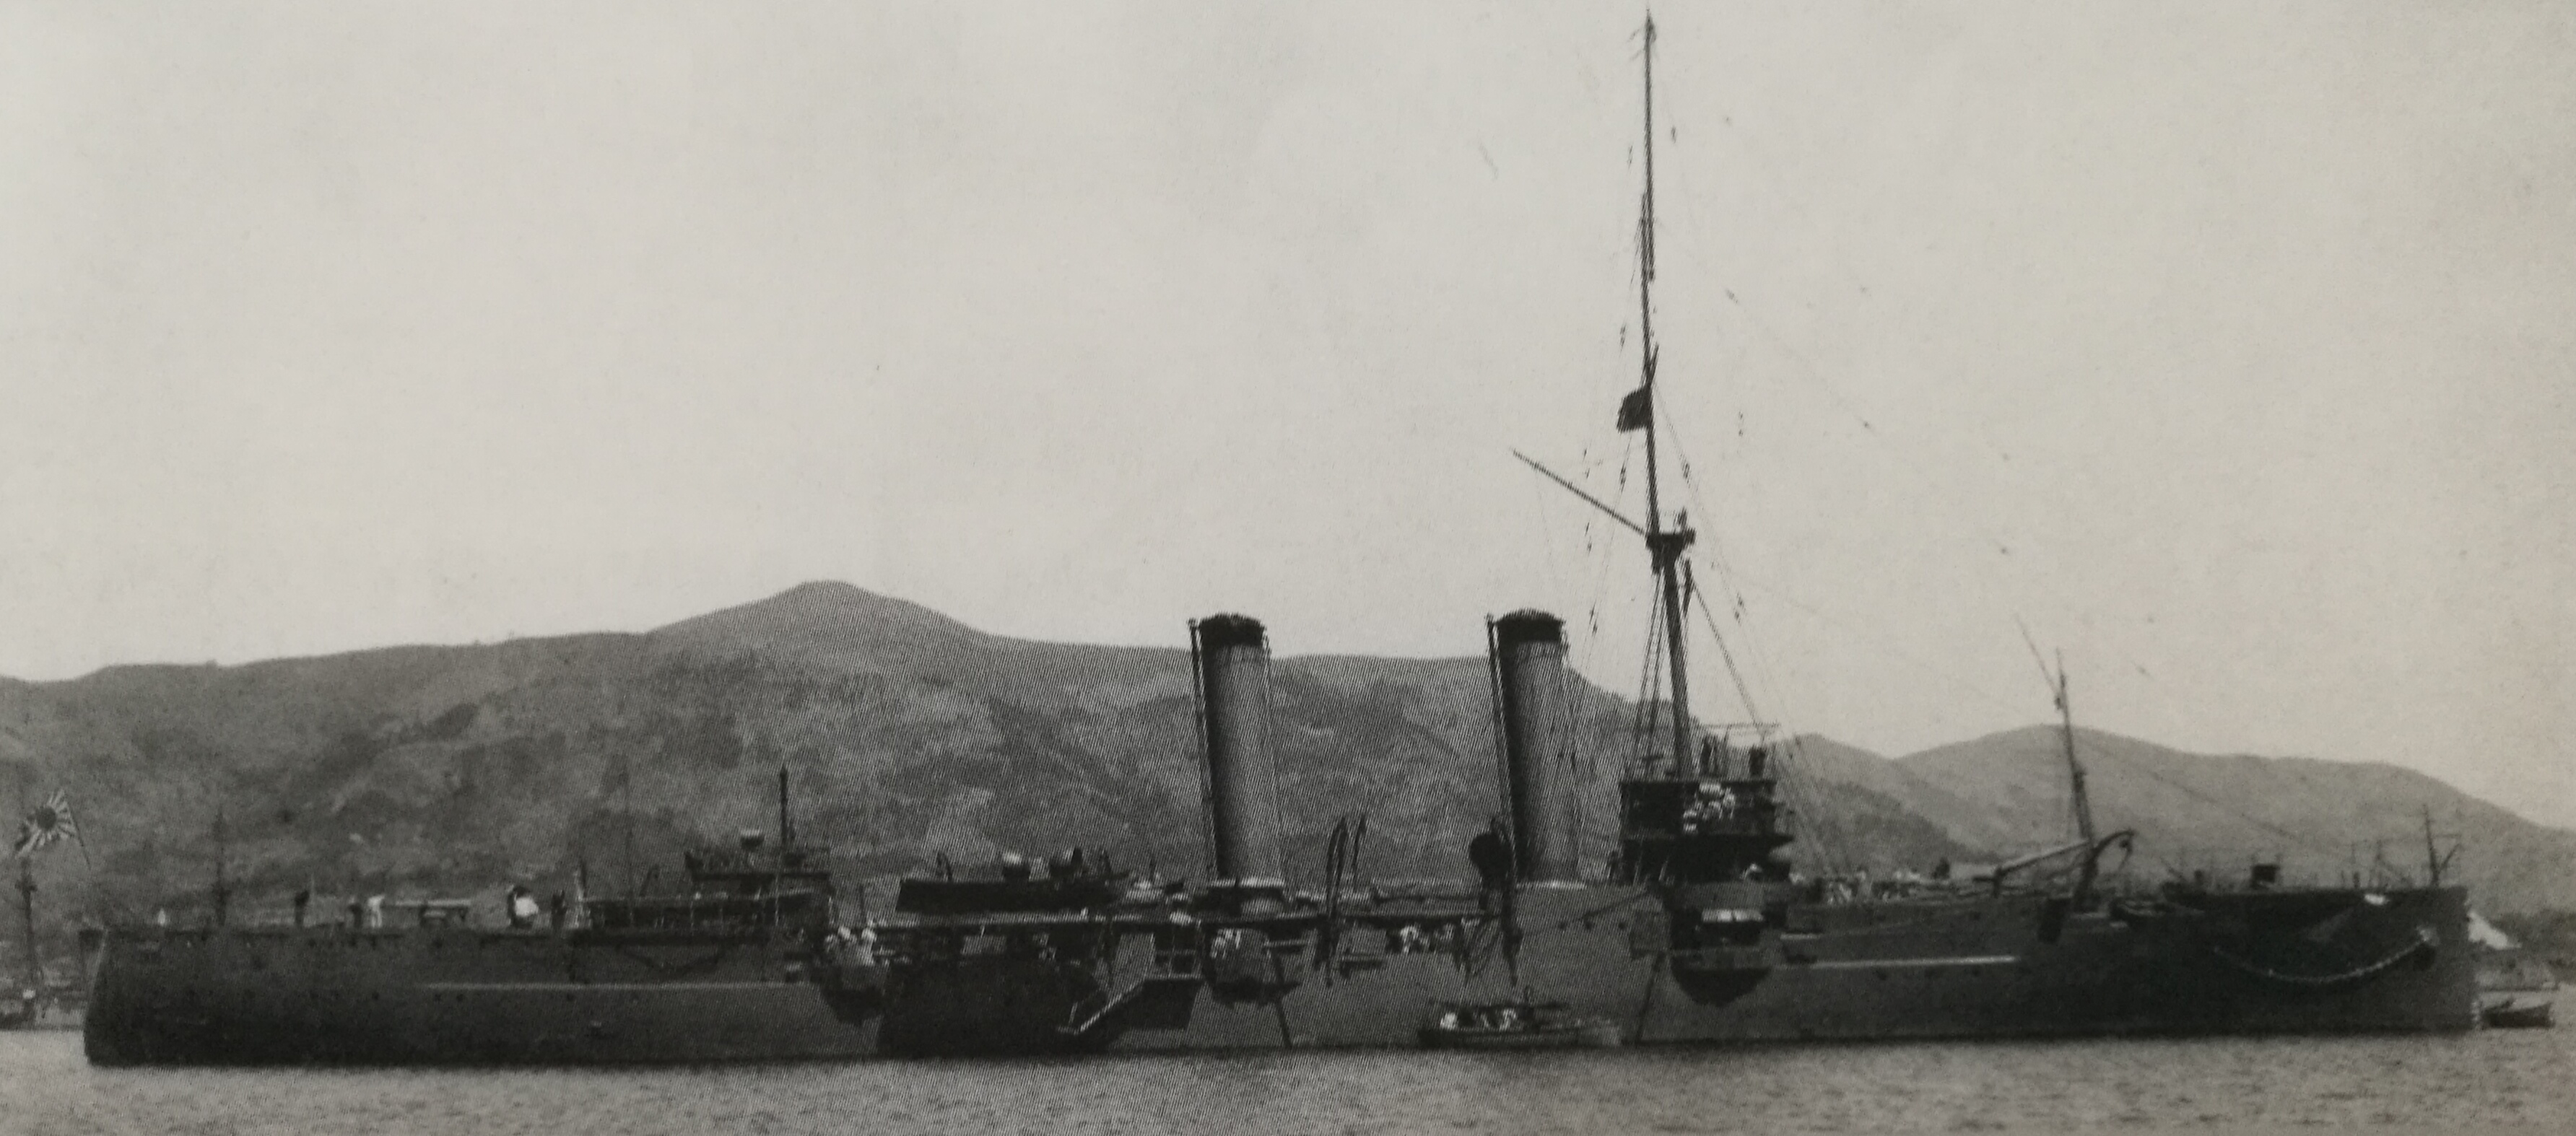 1909年4月16日停泊於佐世保軍港的須磨，以及撤除了後桅桿